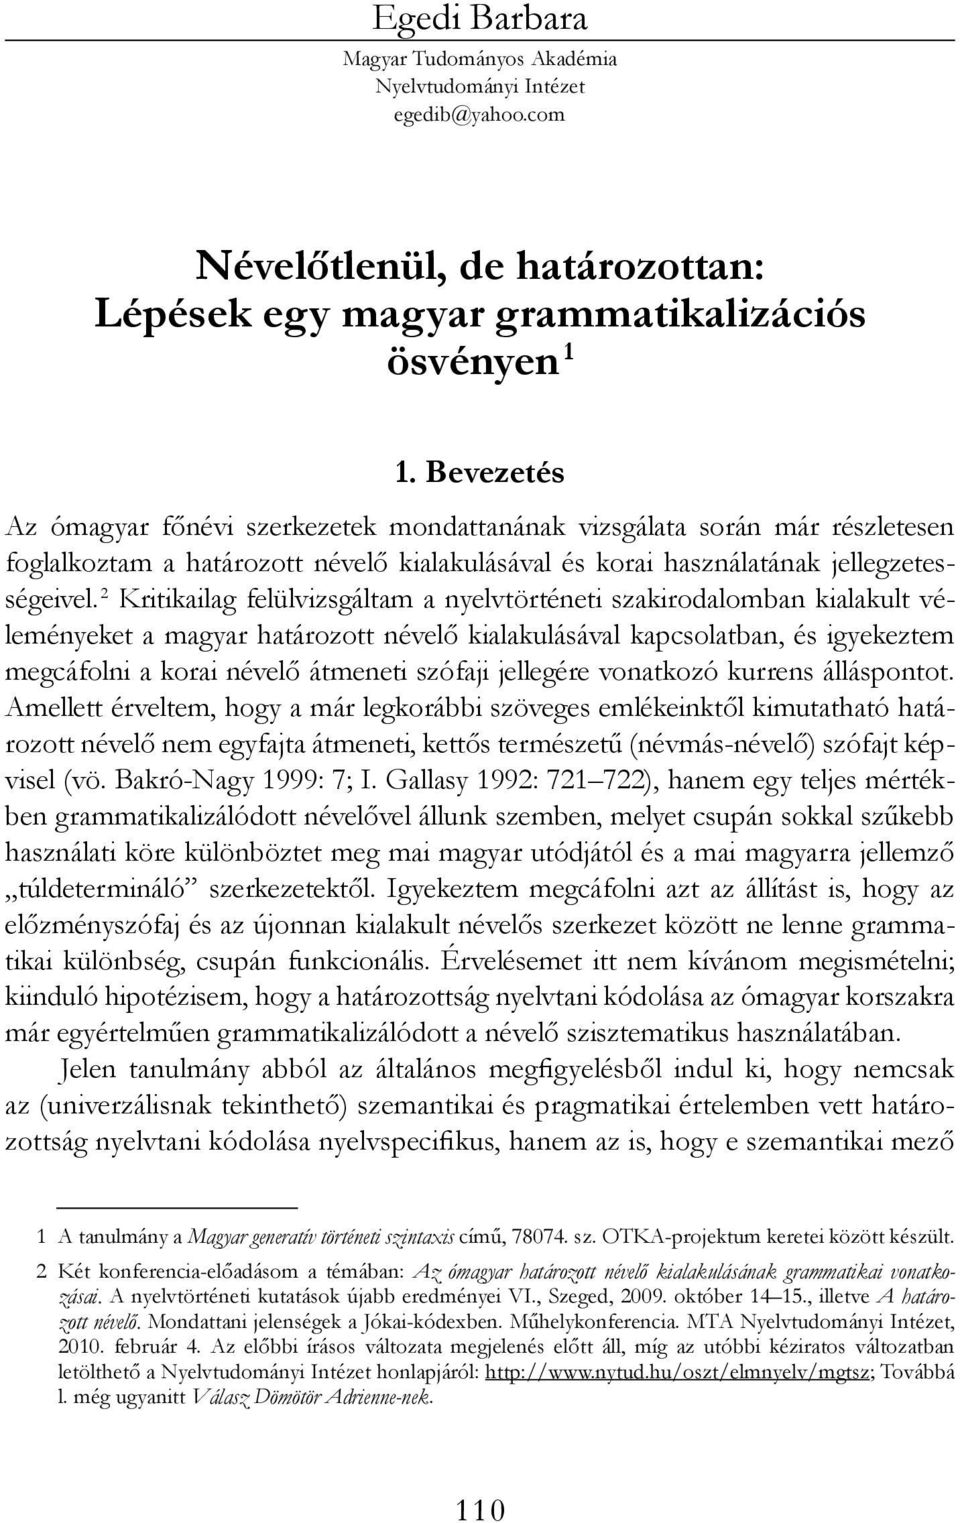 2 Kritikailag felülvizsgáltam a nyelvtörténeti szakirodalomban kialakult véleményeket a magyar határozott névelő kialakulásával kapcsolatban, és igyekeztem megcáfolni a korai névelő átmeneti szófaji